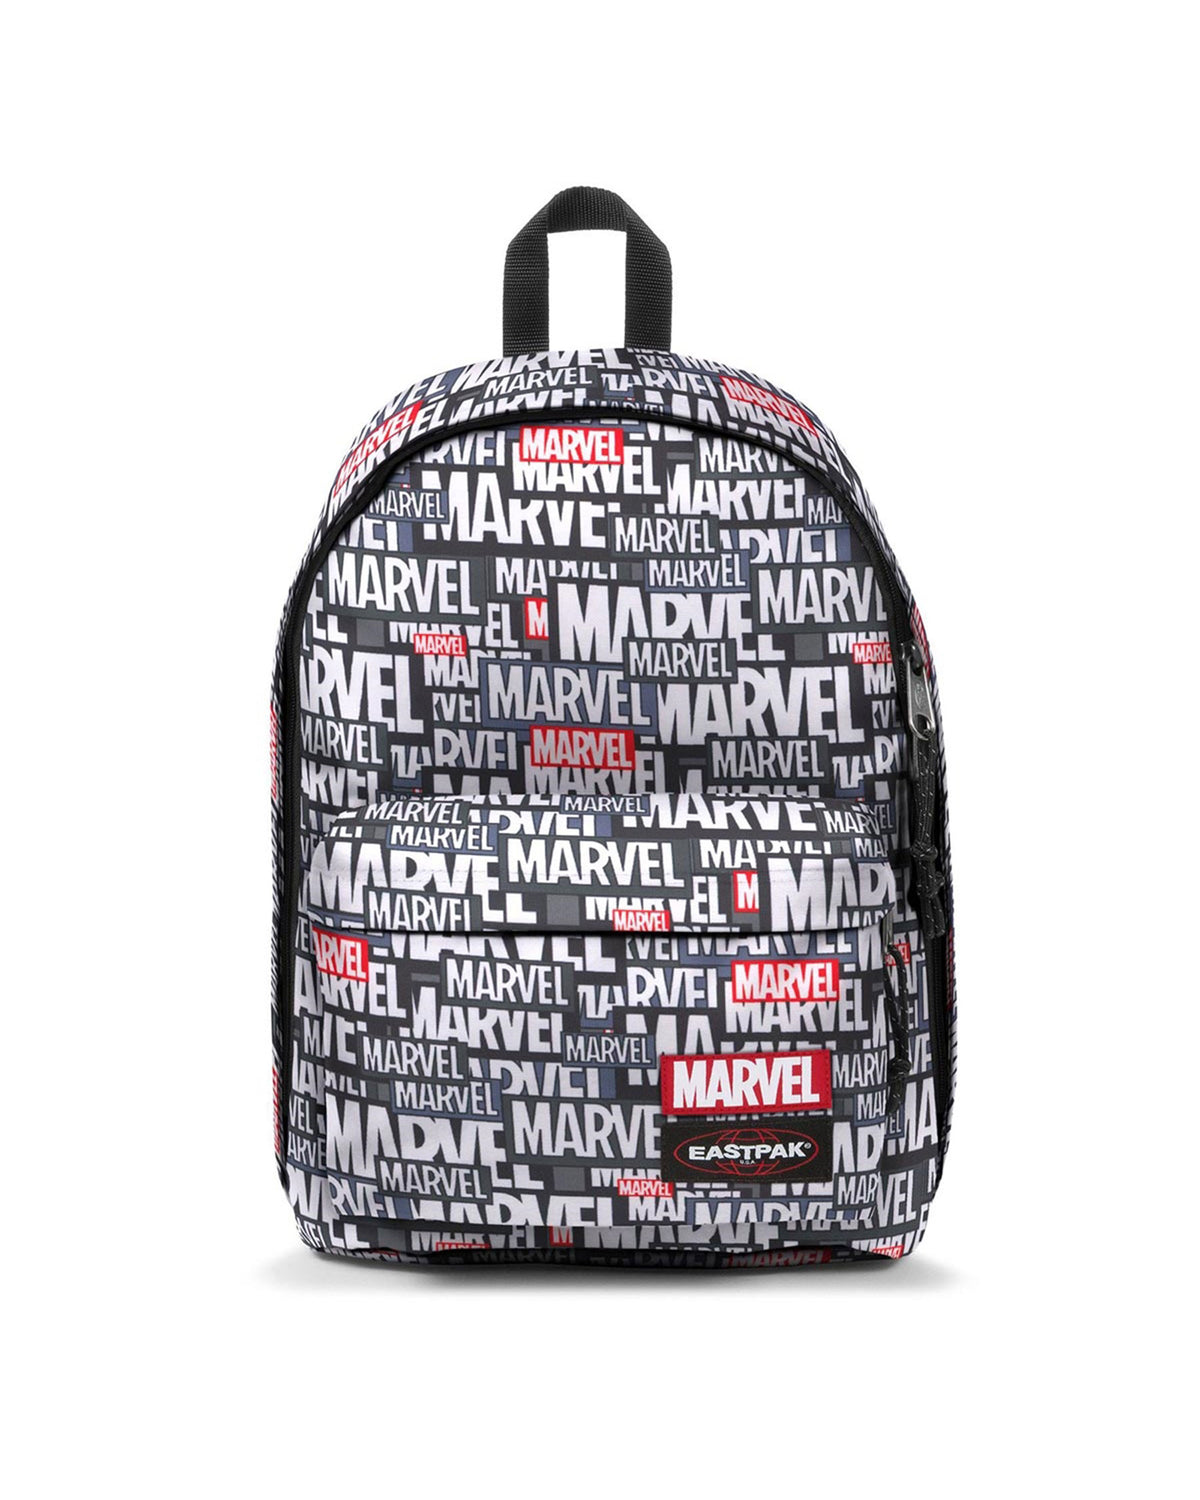 Backpack Marvel x Eastpak Out Of Office EK000767-L43